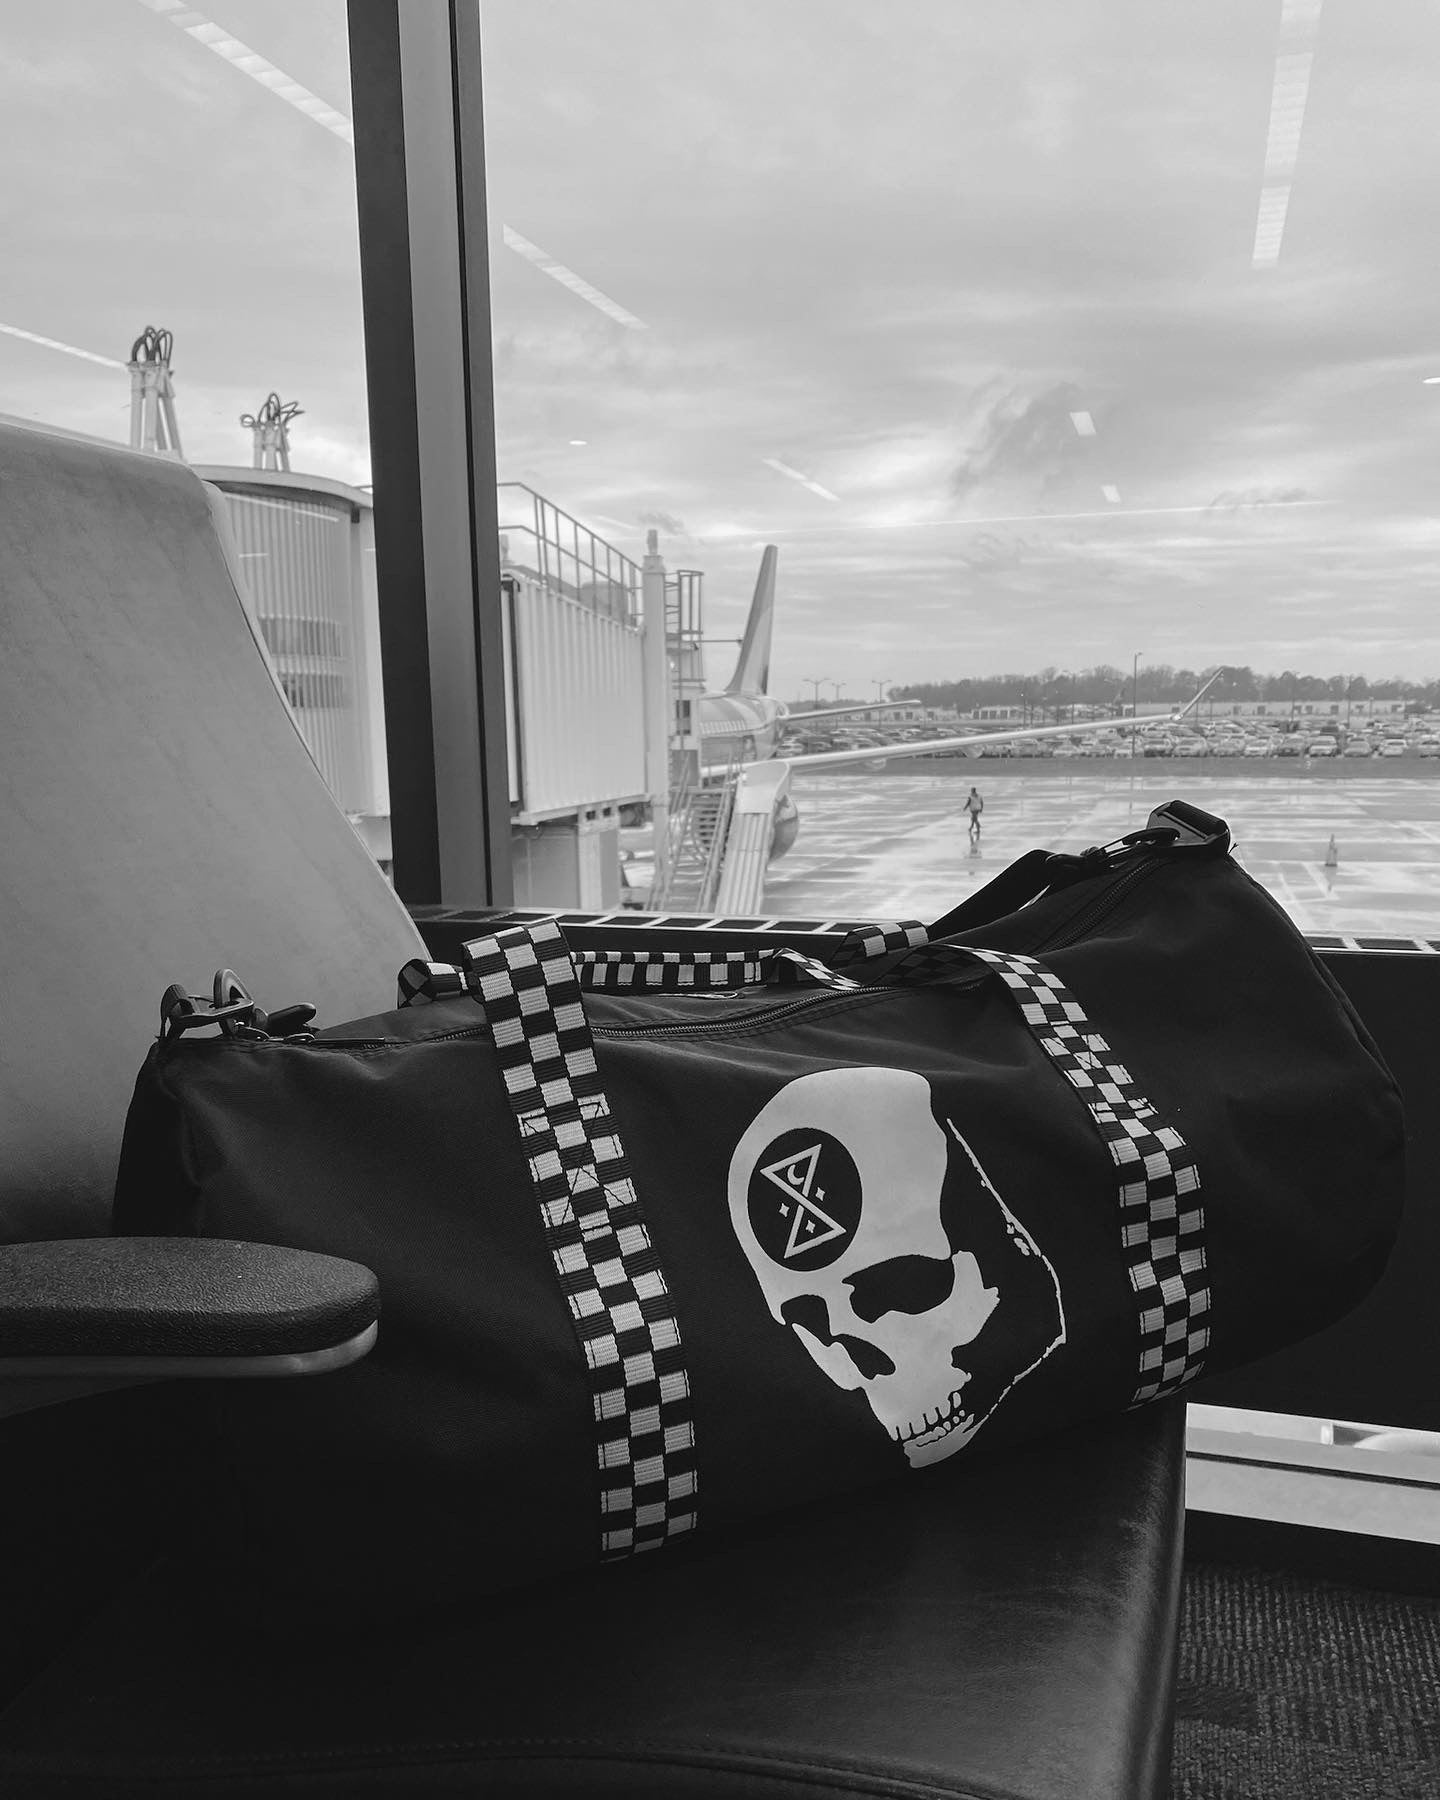 Skull Skateboard Travel Bag, Weekender Bags for Women